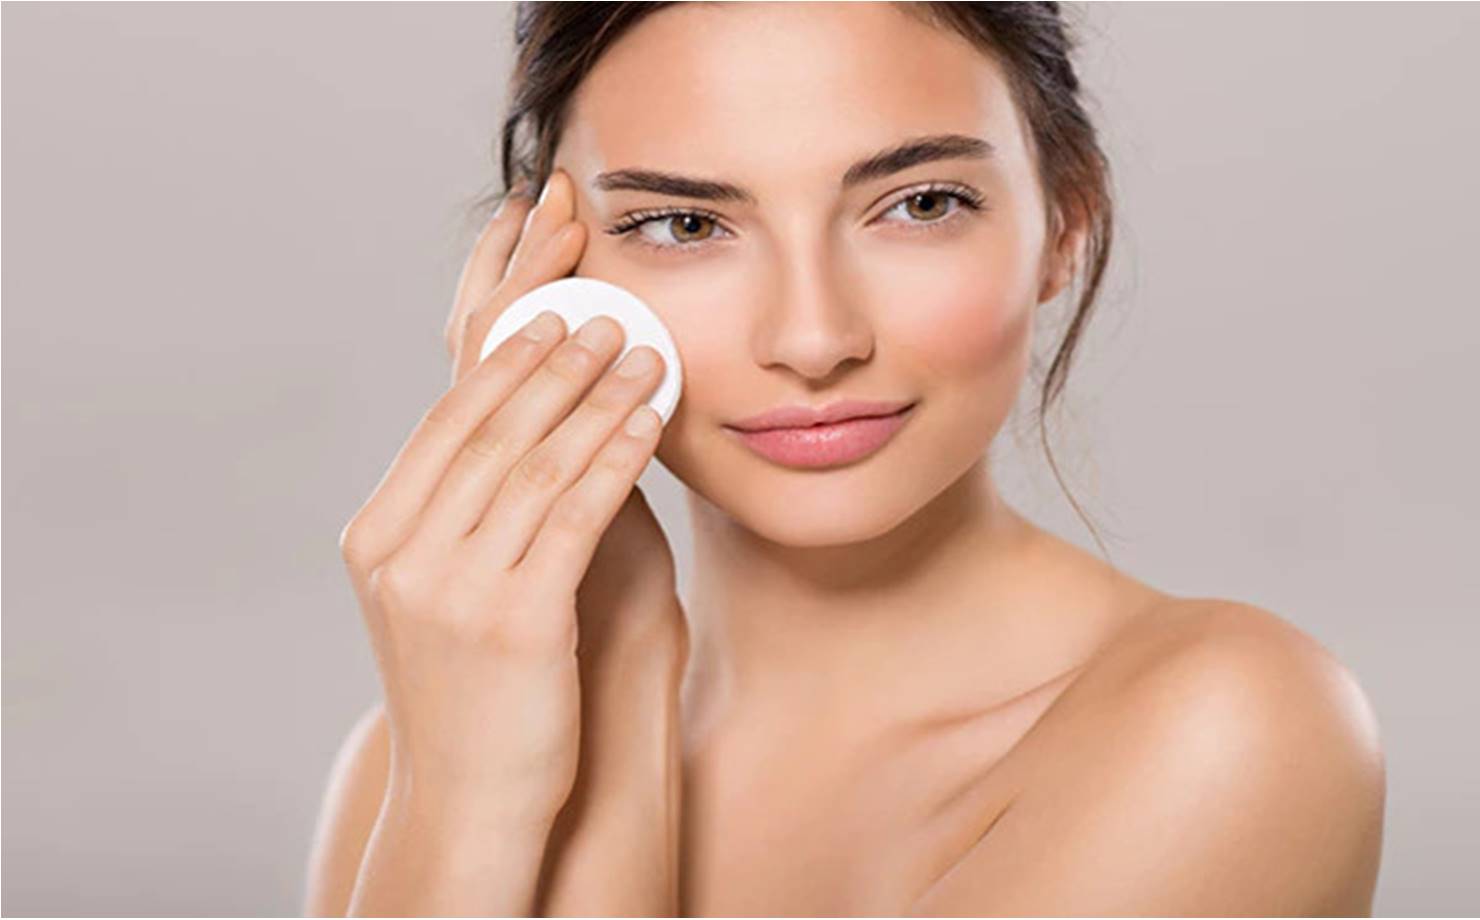 7 maneiras naturais de remover a maquiagem sem agredir a pele